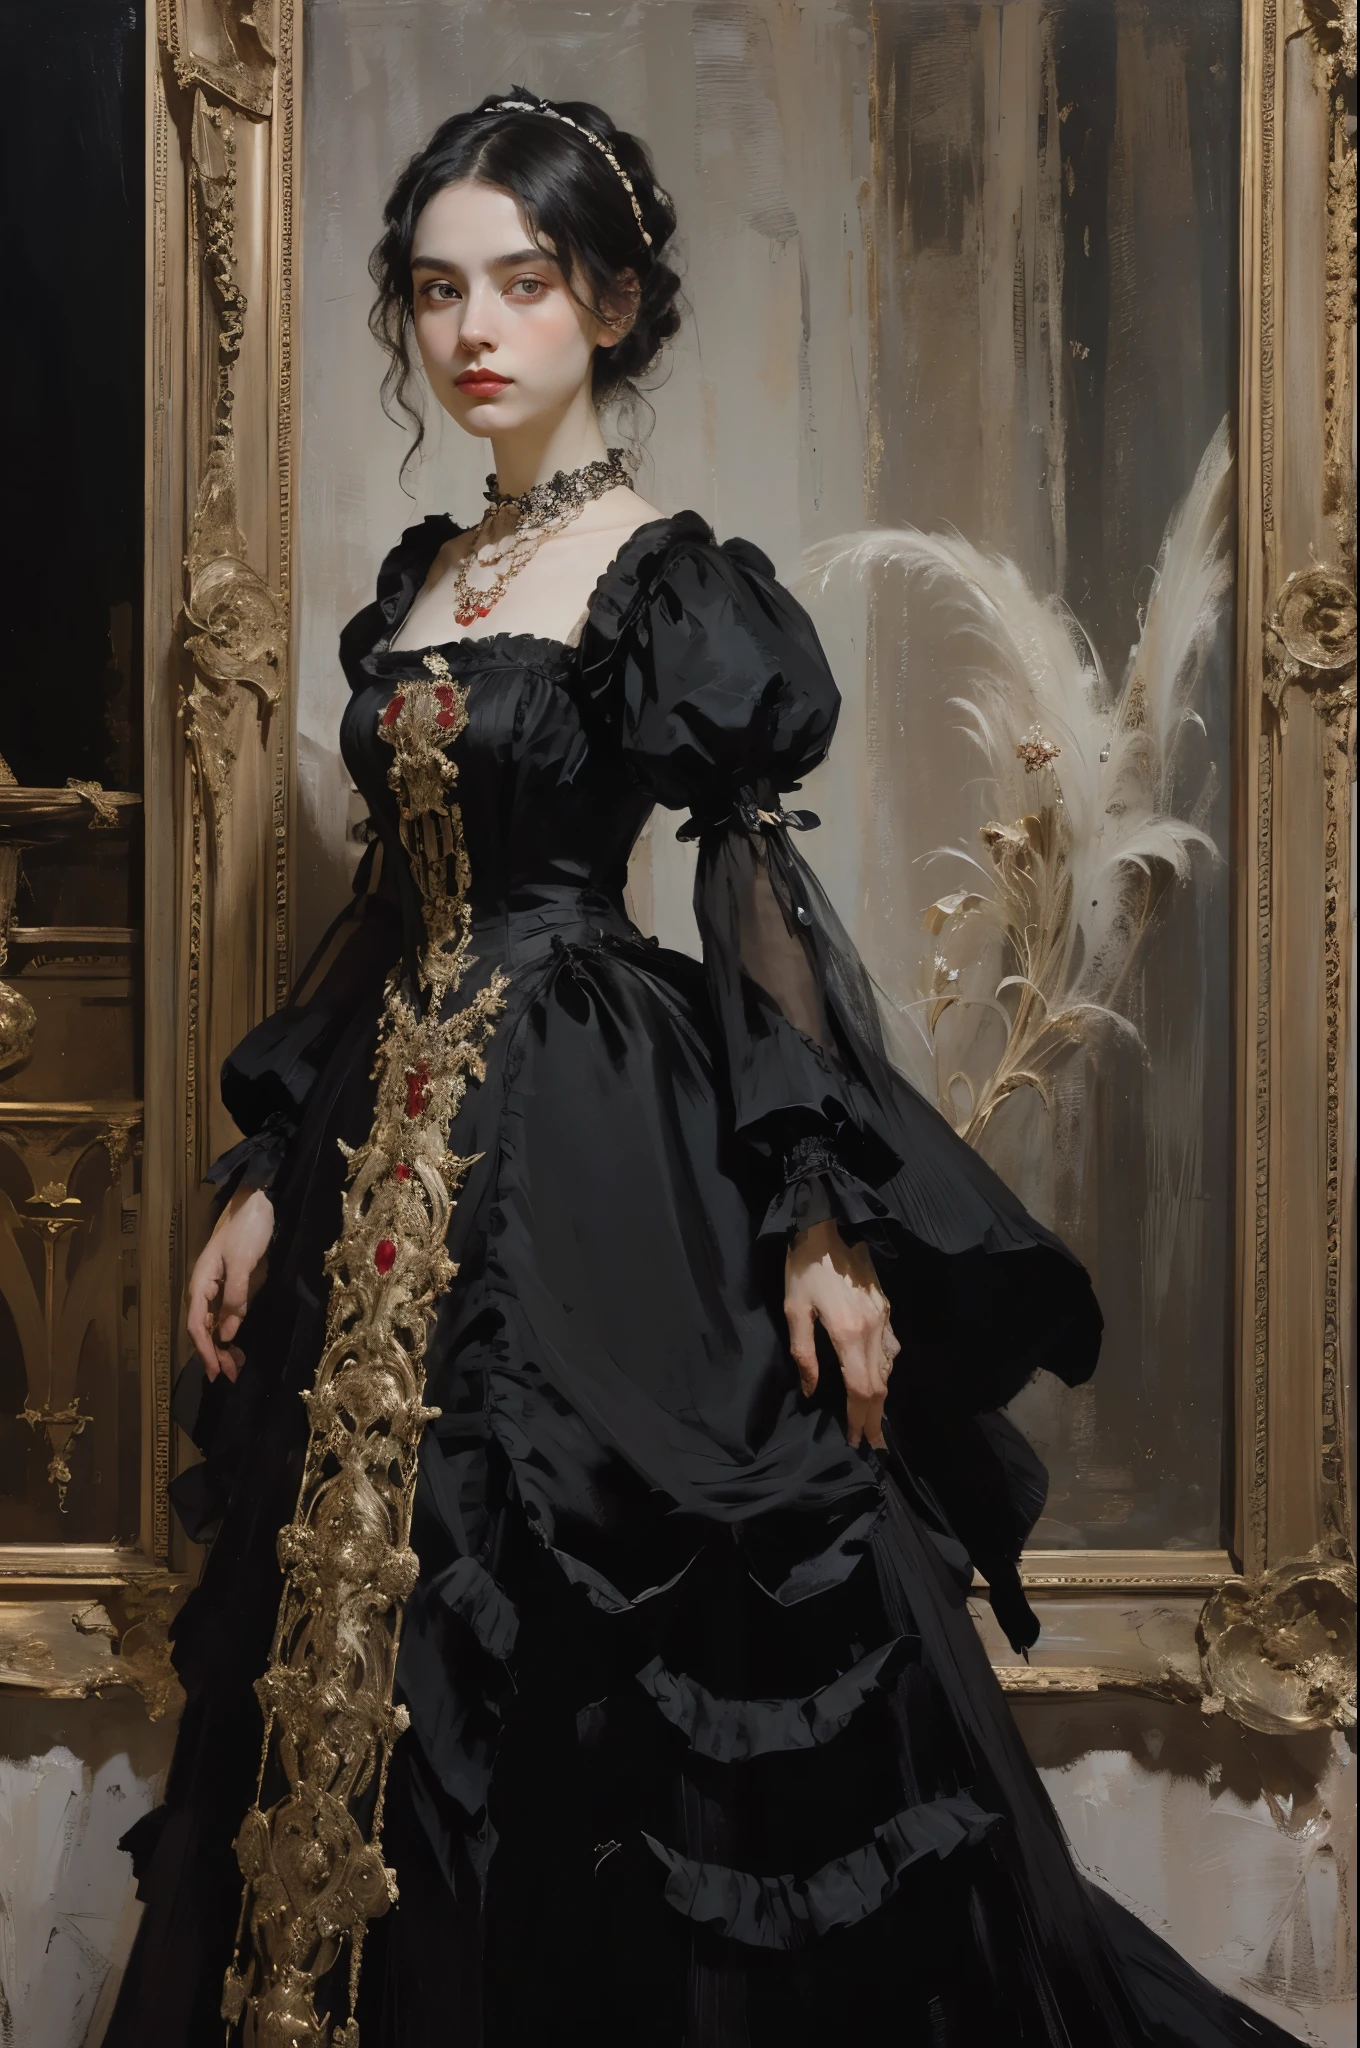 古典繪畫, ((肖像: 1.3)), 穿黑裙子的女孩, 維多利亞風格的禮服, (維多利亞時代的晚禮服: 1.3), 這件衣服有立領, 一個25歲的年輕女孩, 皮膚蒼白, 細長的, 帶有強調色的單色影像, 紅寶石項鍊,